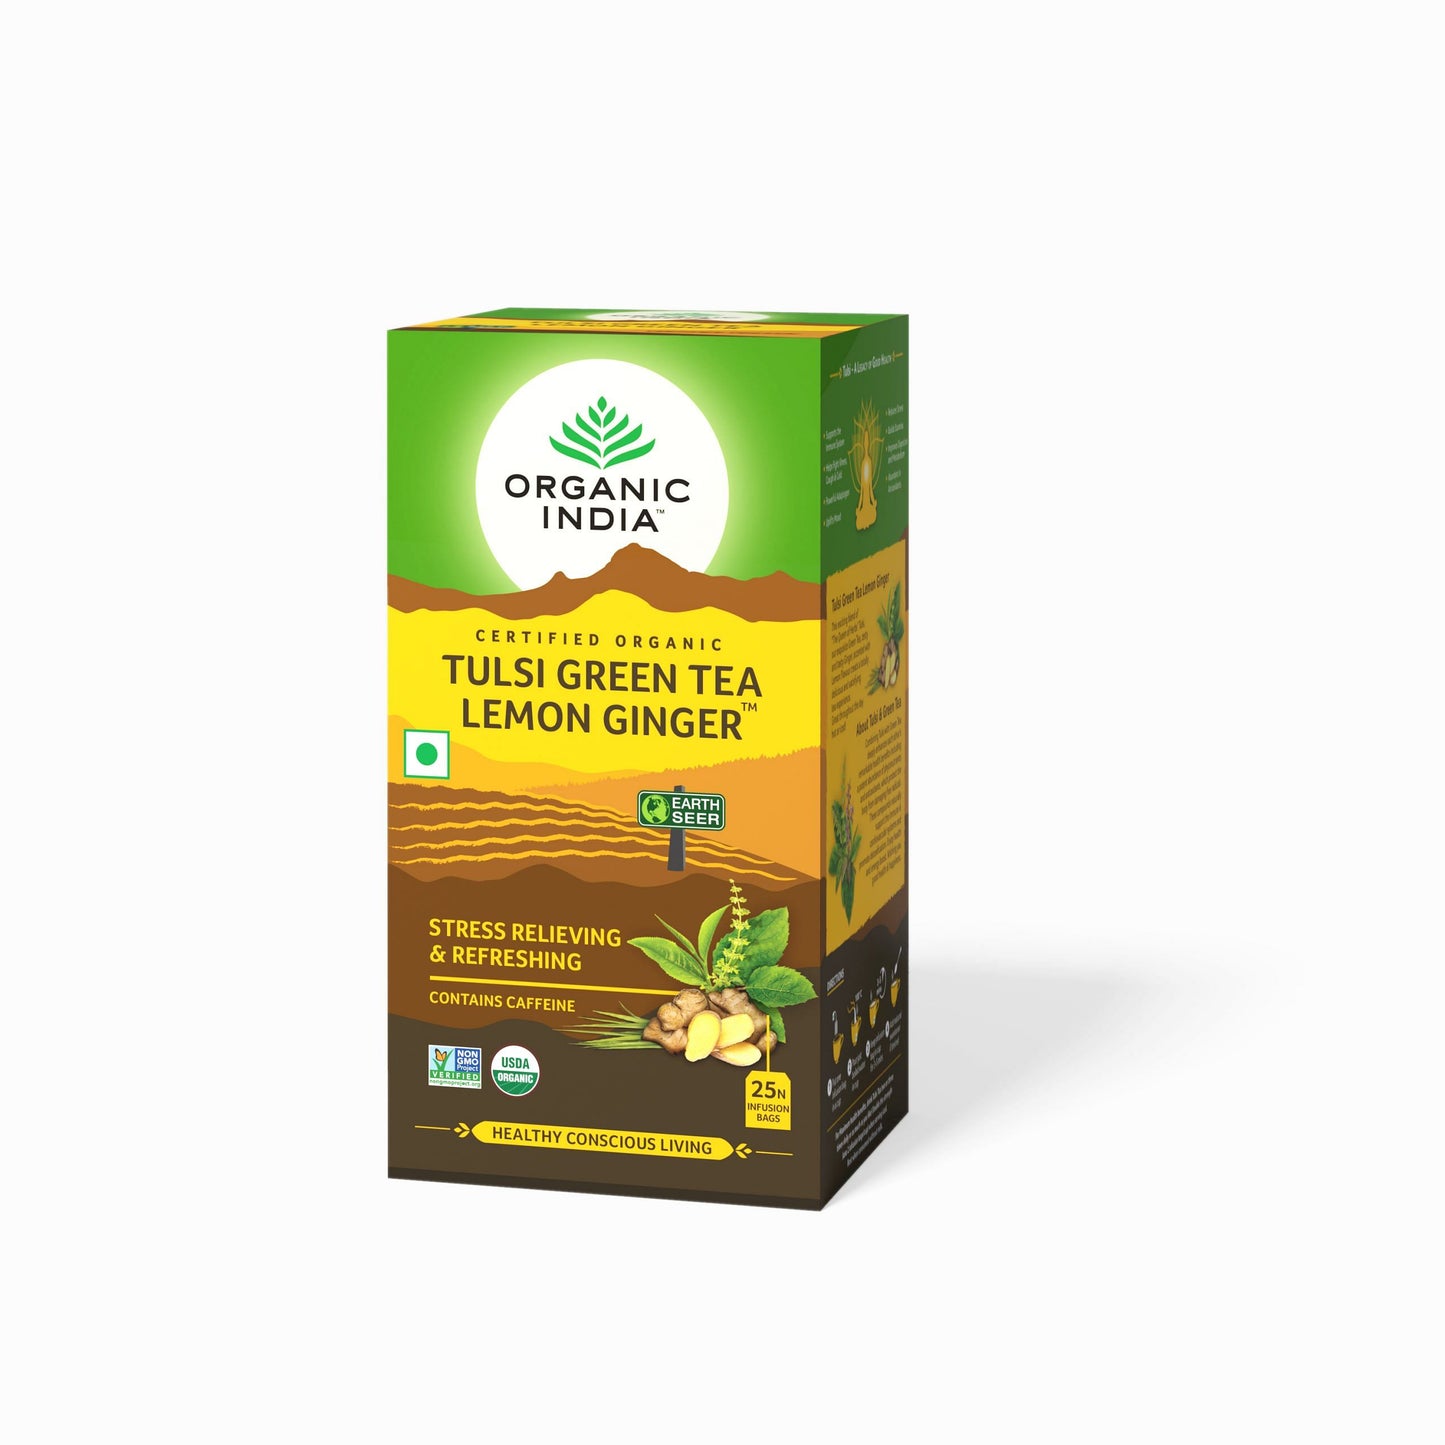 ORGANIC INDIA Tulsi Lemon Ginger Tea - 25 Tea Bags Pack of 2